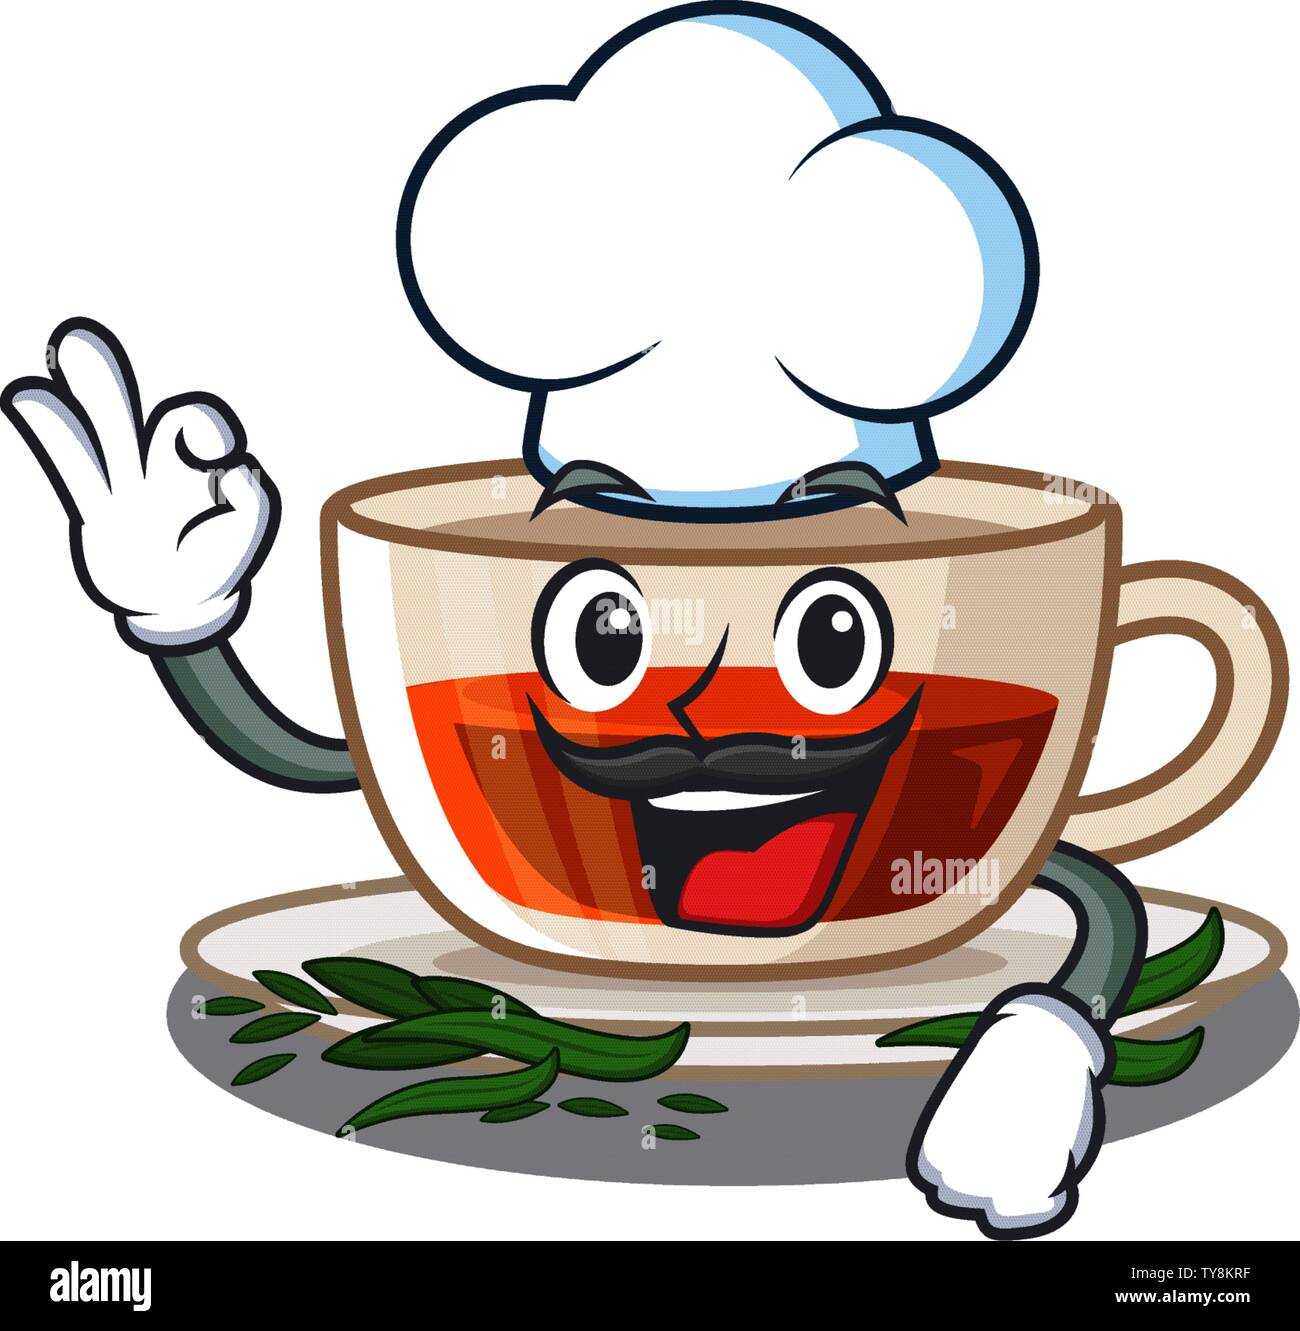 Chef darjeeling tea in the mascot shape Stock Vector